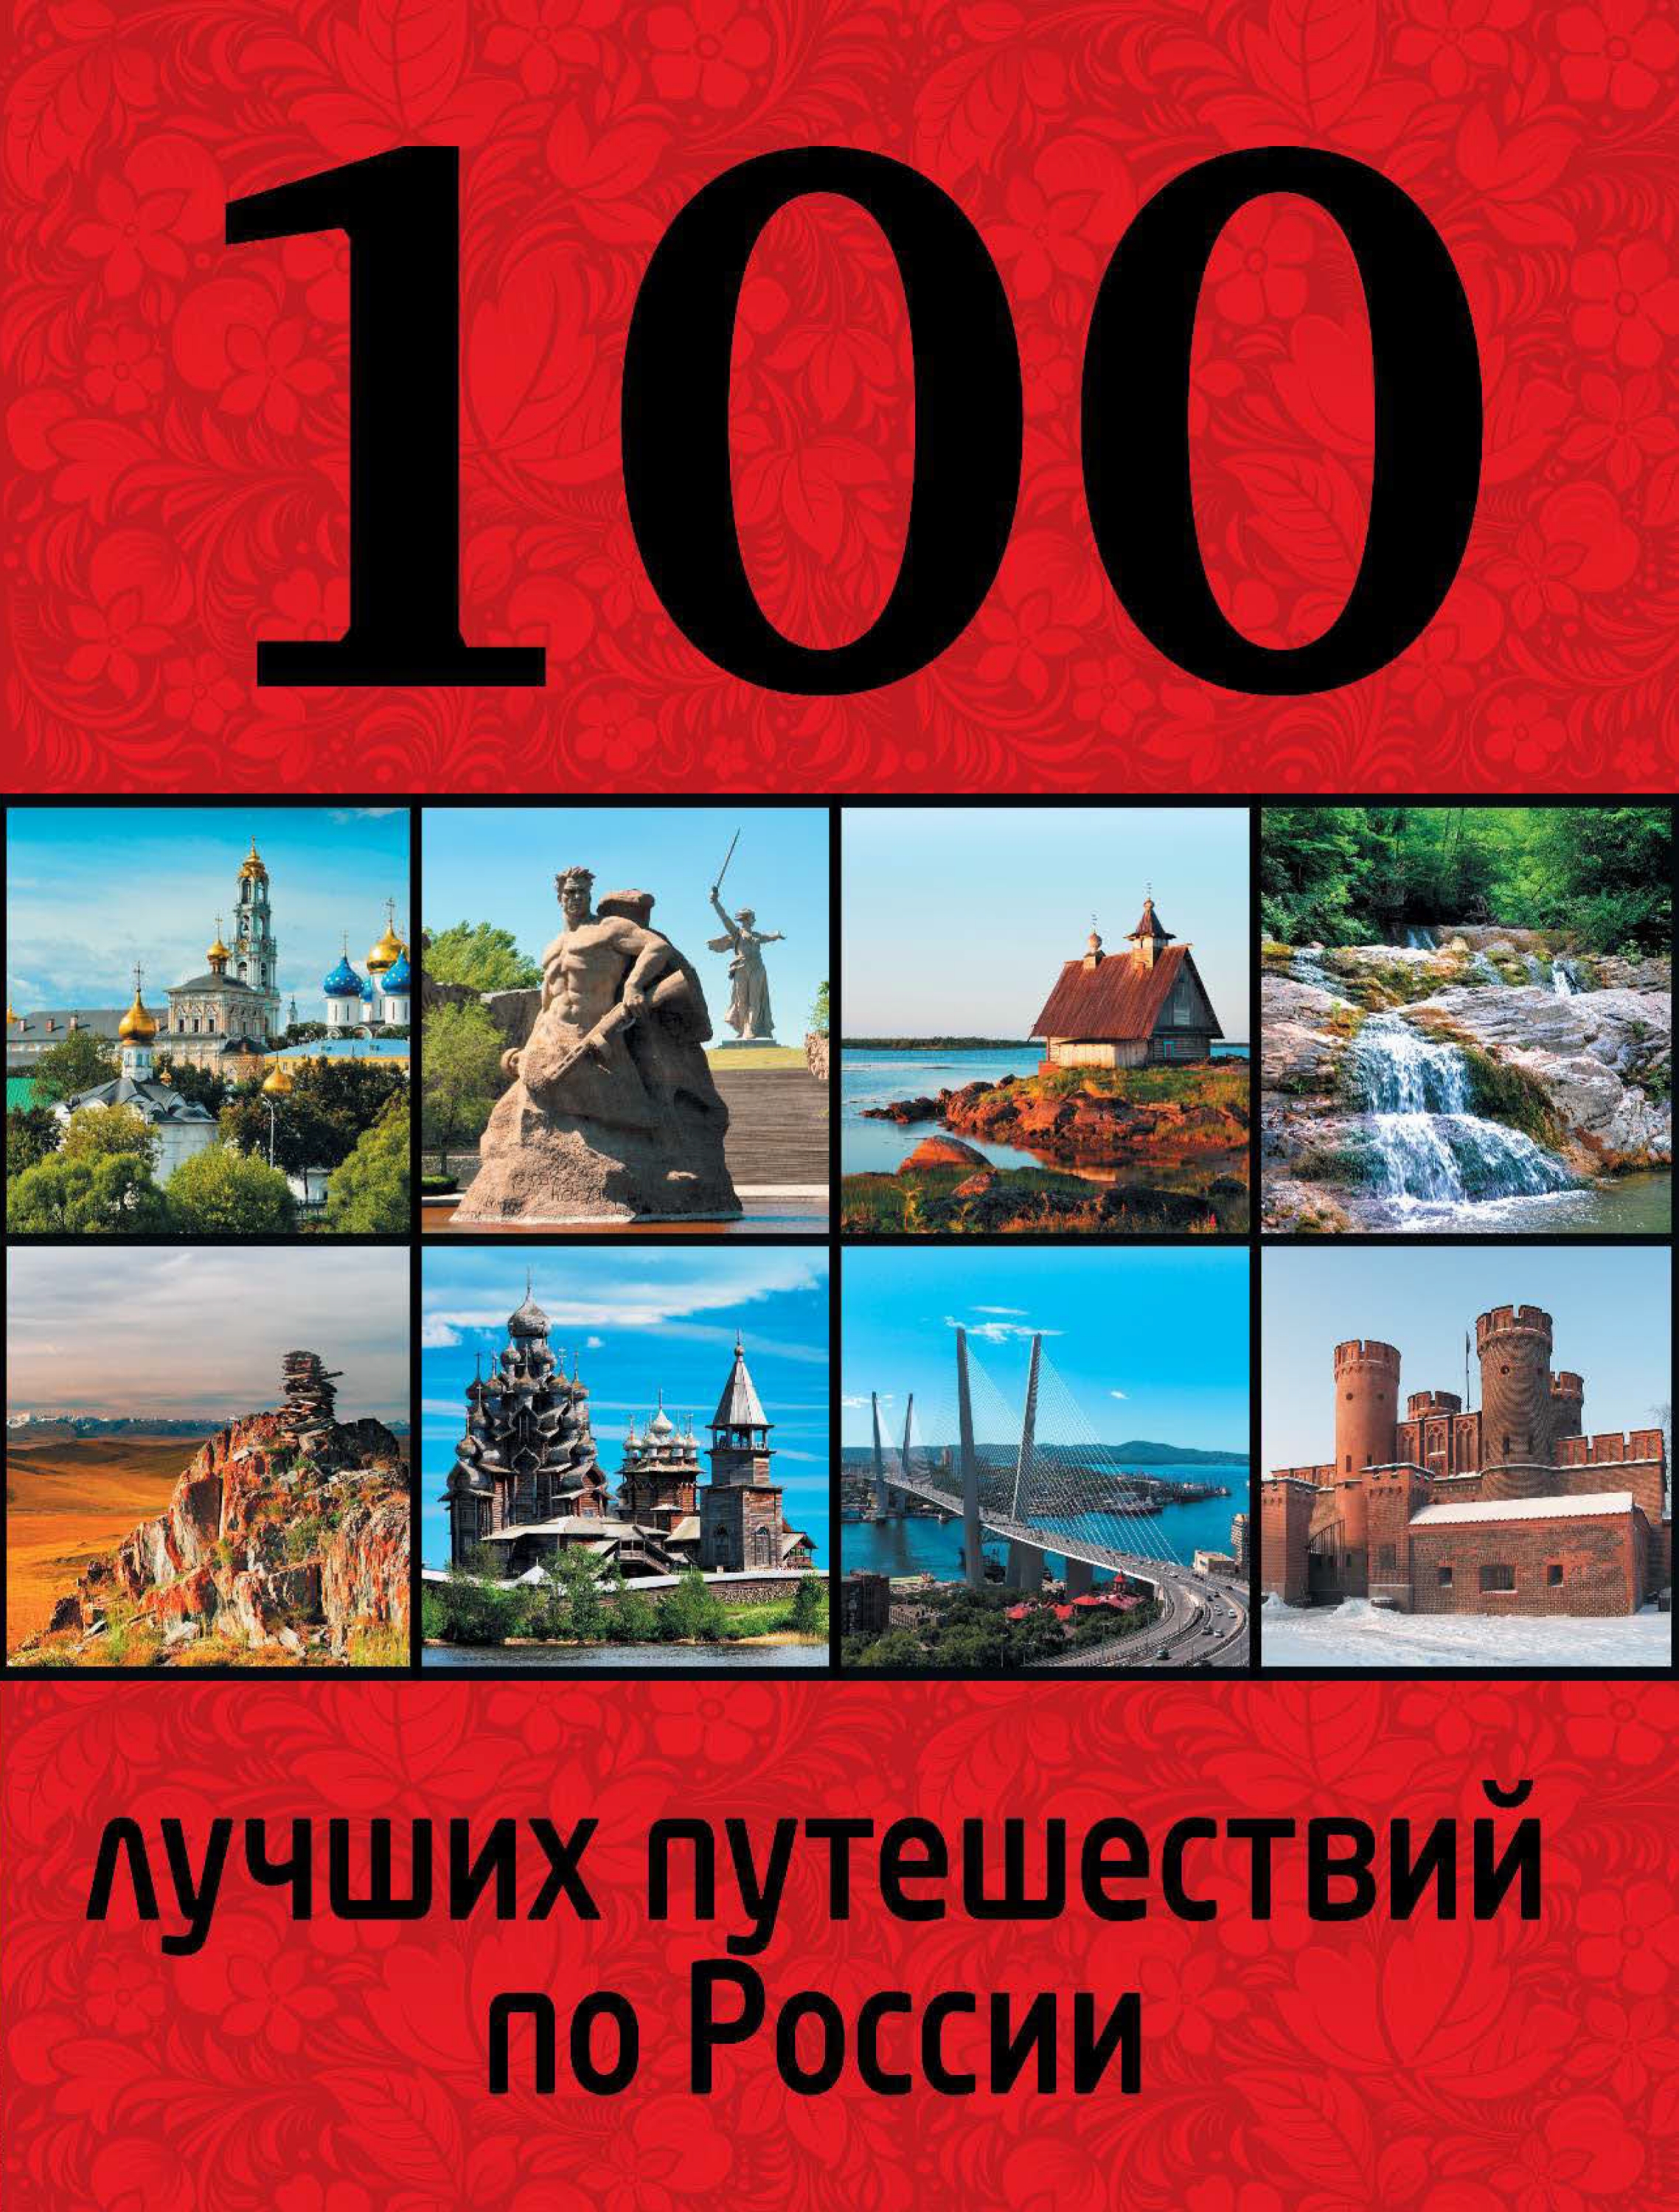 100лучших путешествий по России